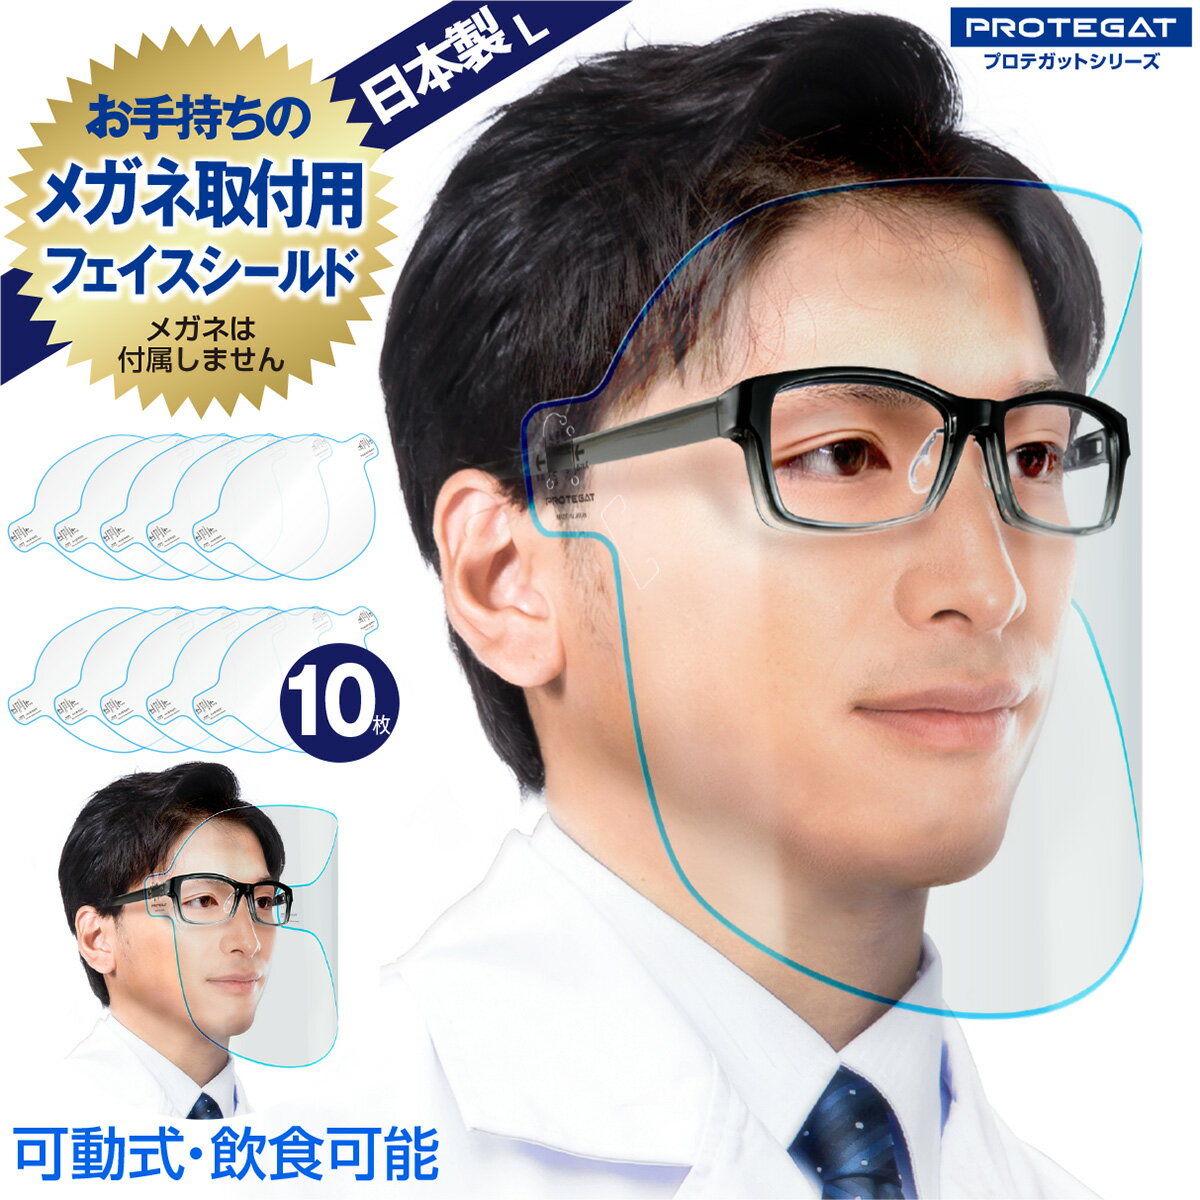 飲食可能 フェイスシールド Lサイズ 日本製 可動式 自社工場 10枚 メガネ 感染対策 飛沫対策 透明 青ライン フェイスガード 眼鏡 取り付け用 L プロテガットシリーズ